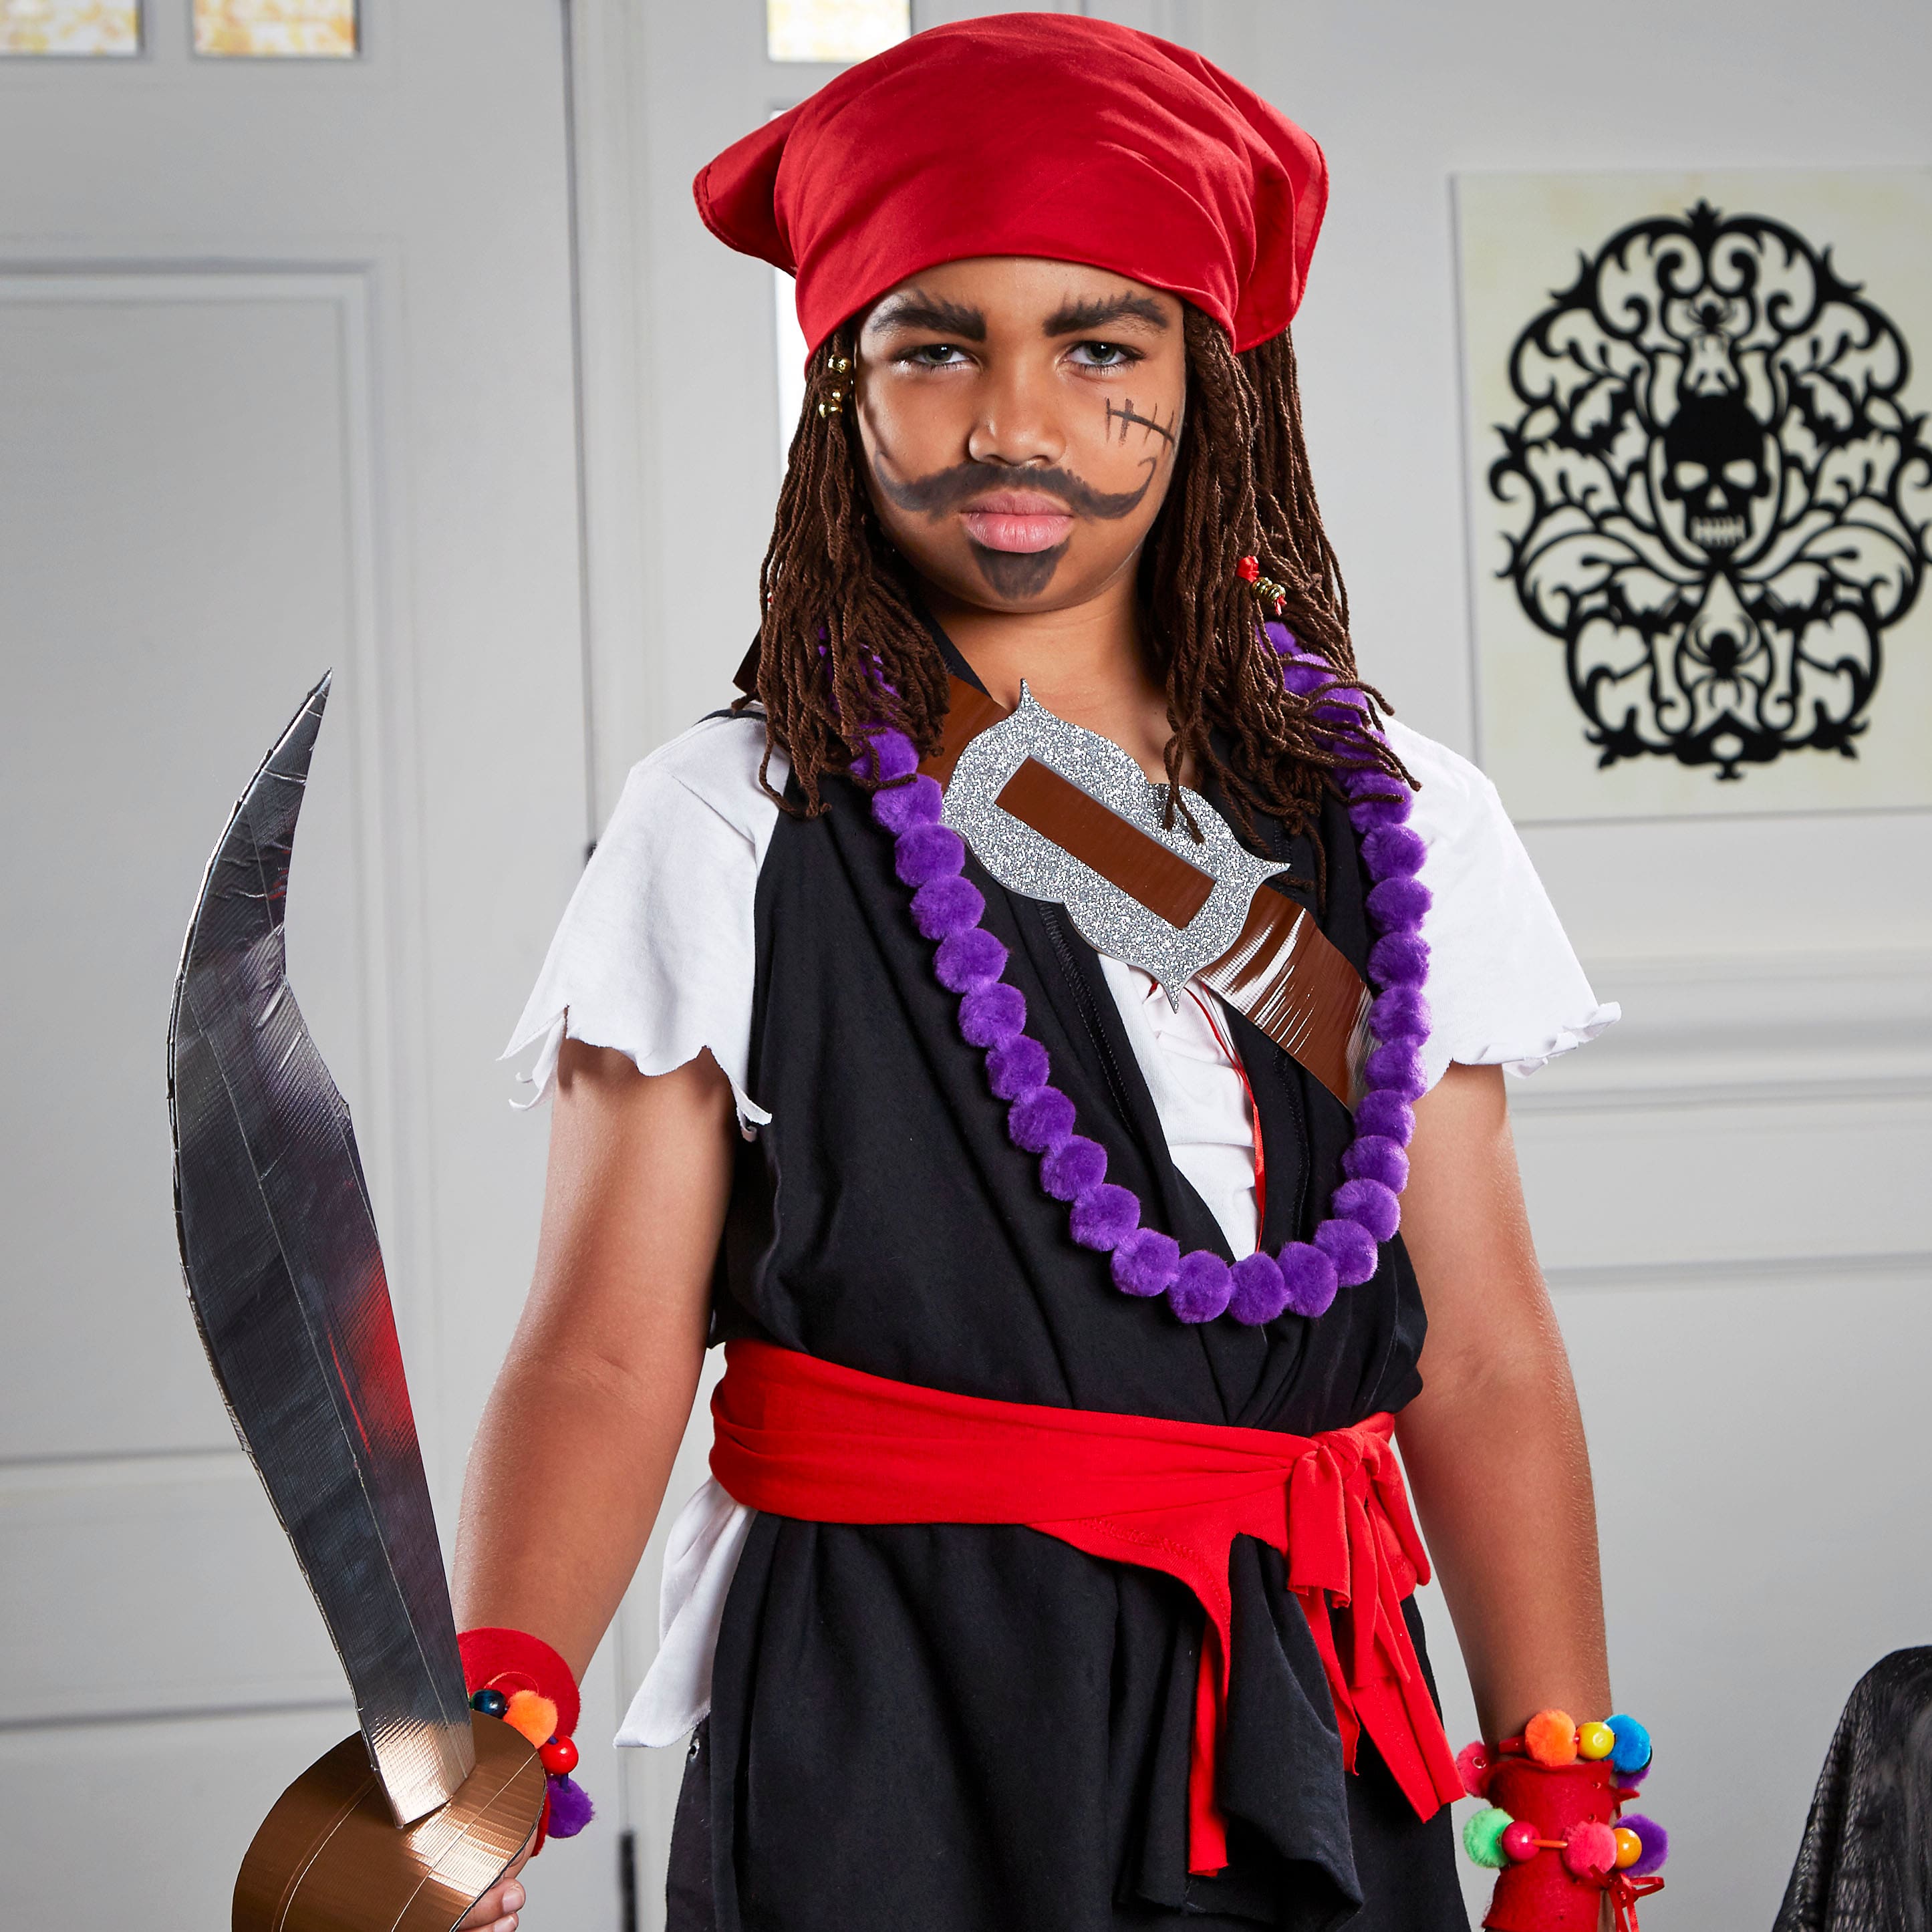 simple pirate costume men